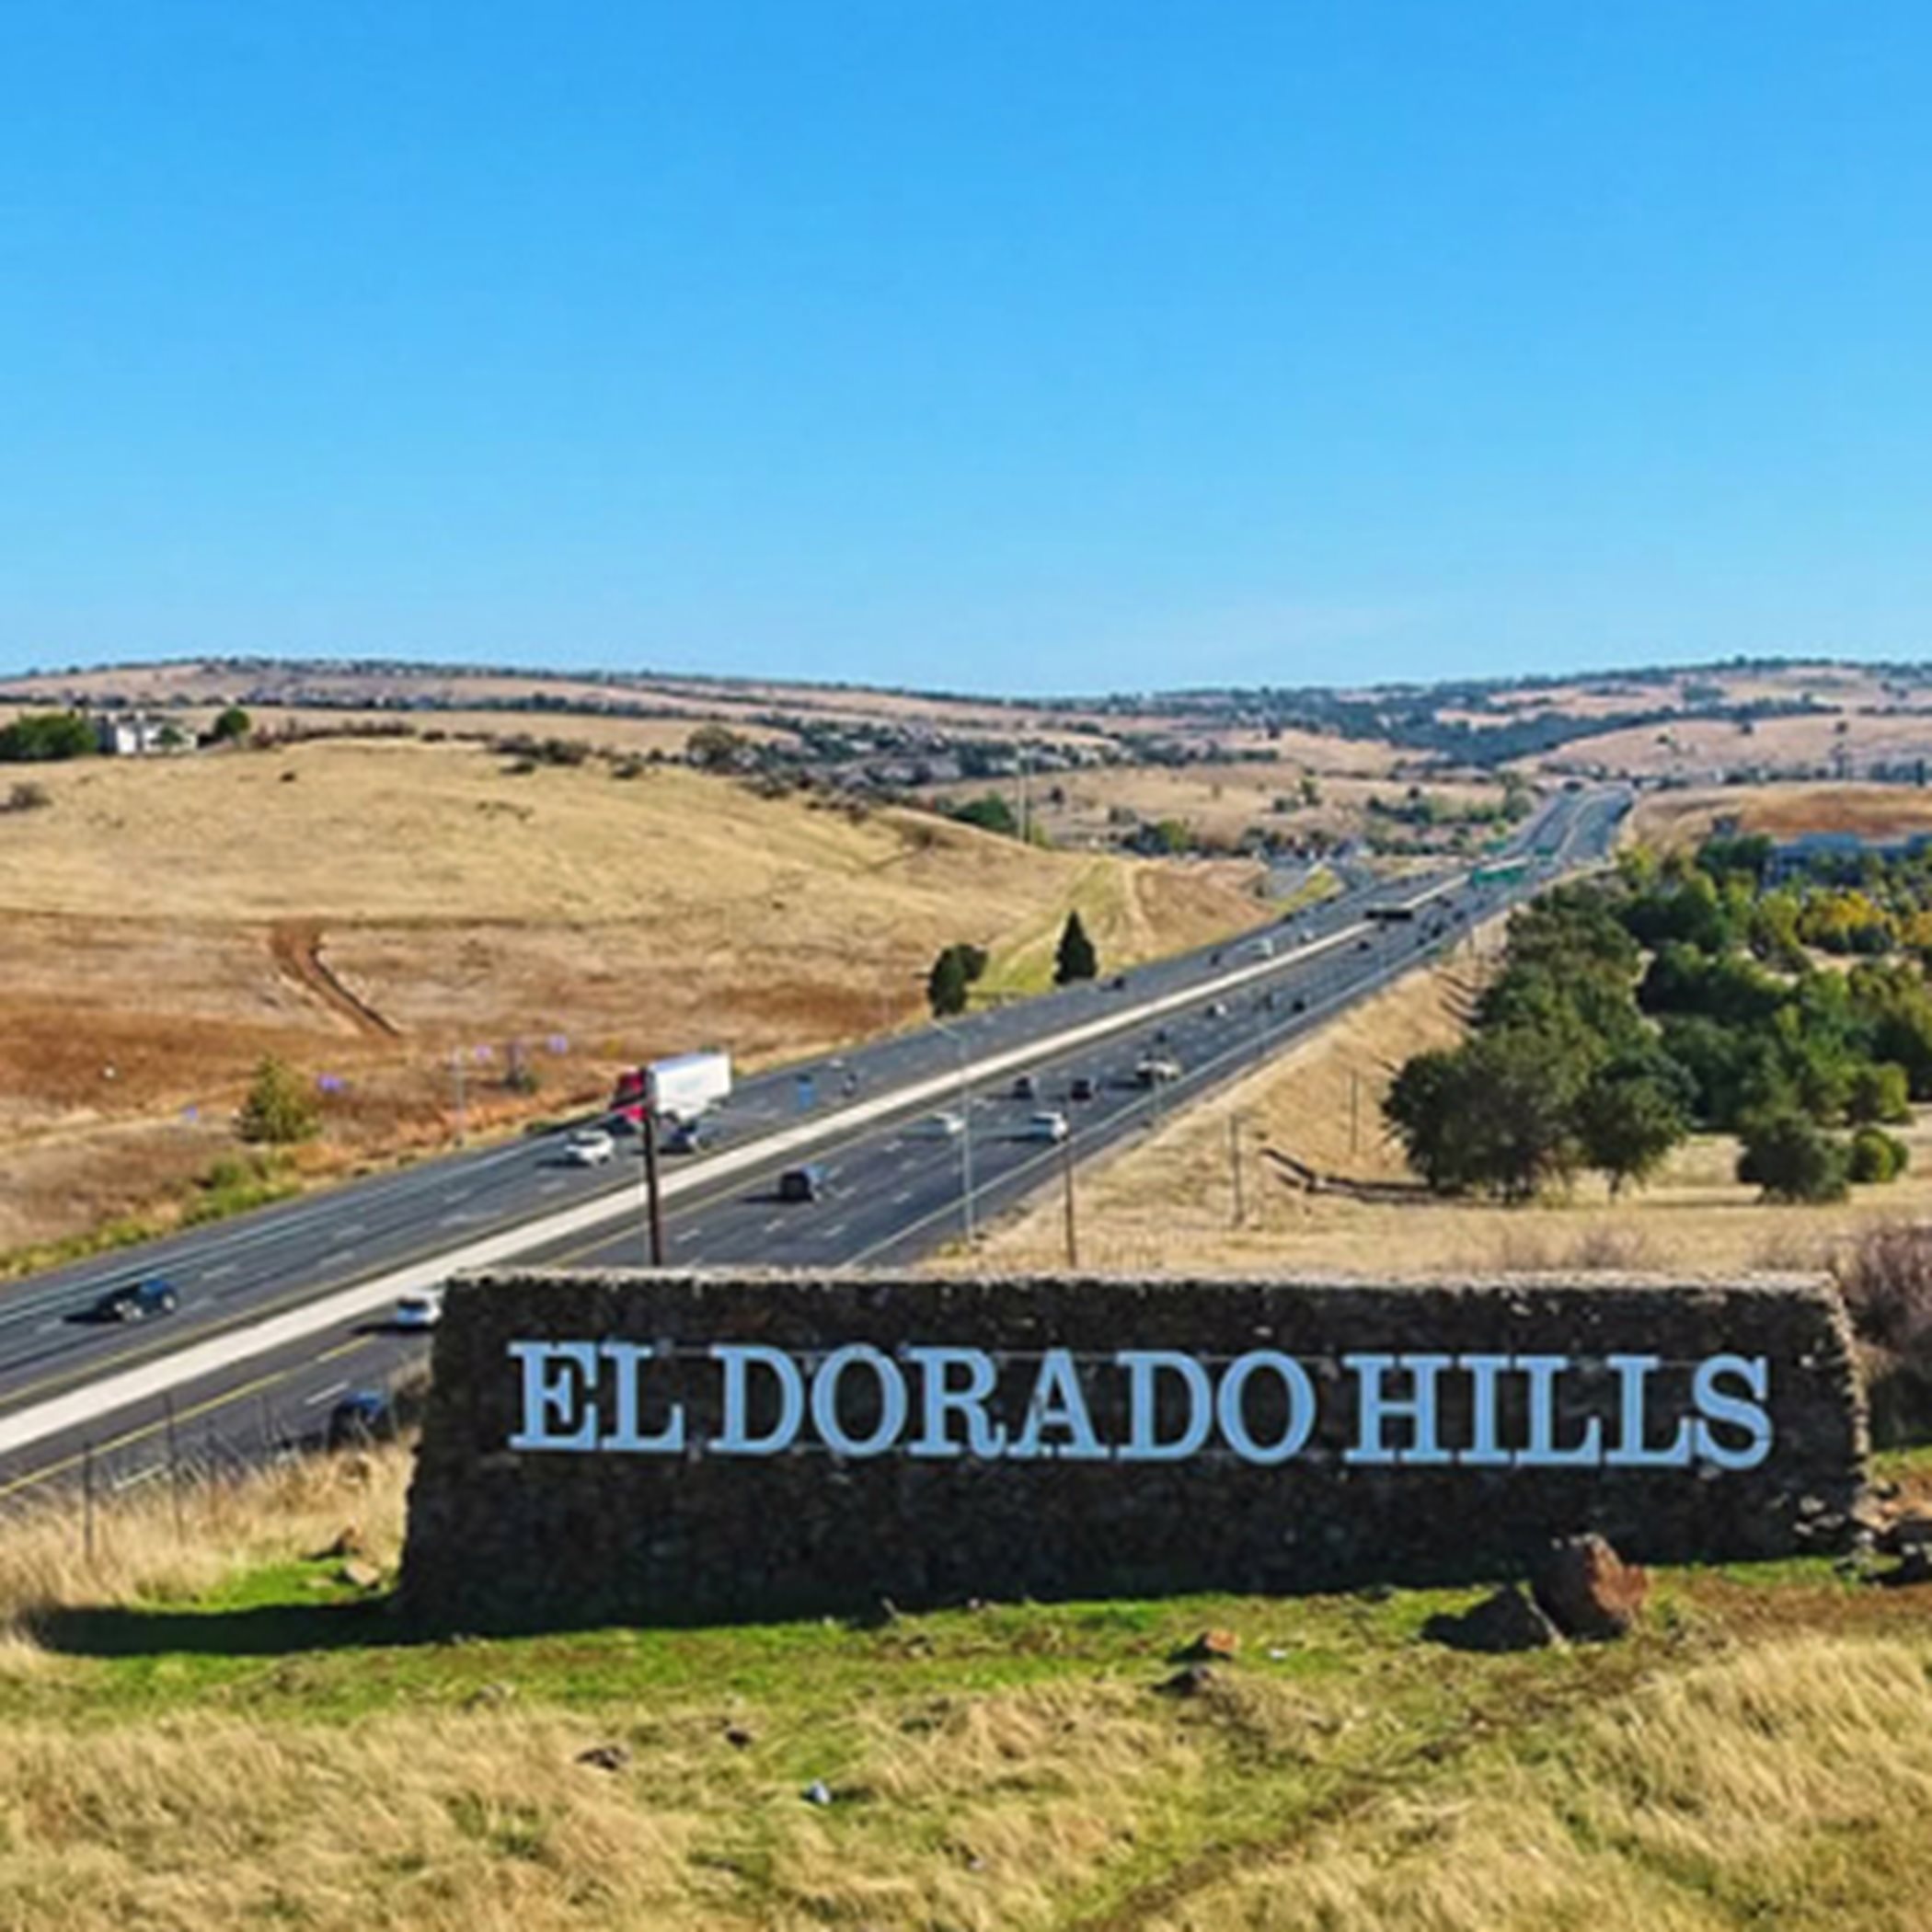 El Dorado Hills welcome sign